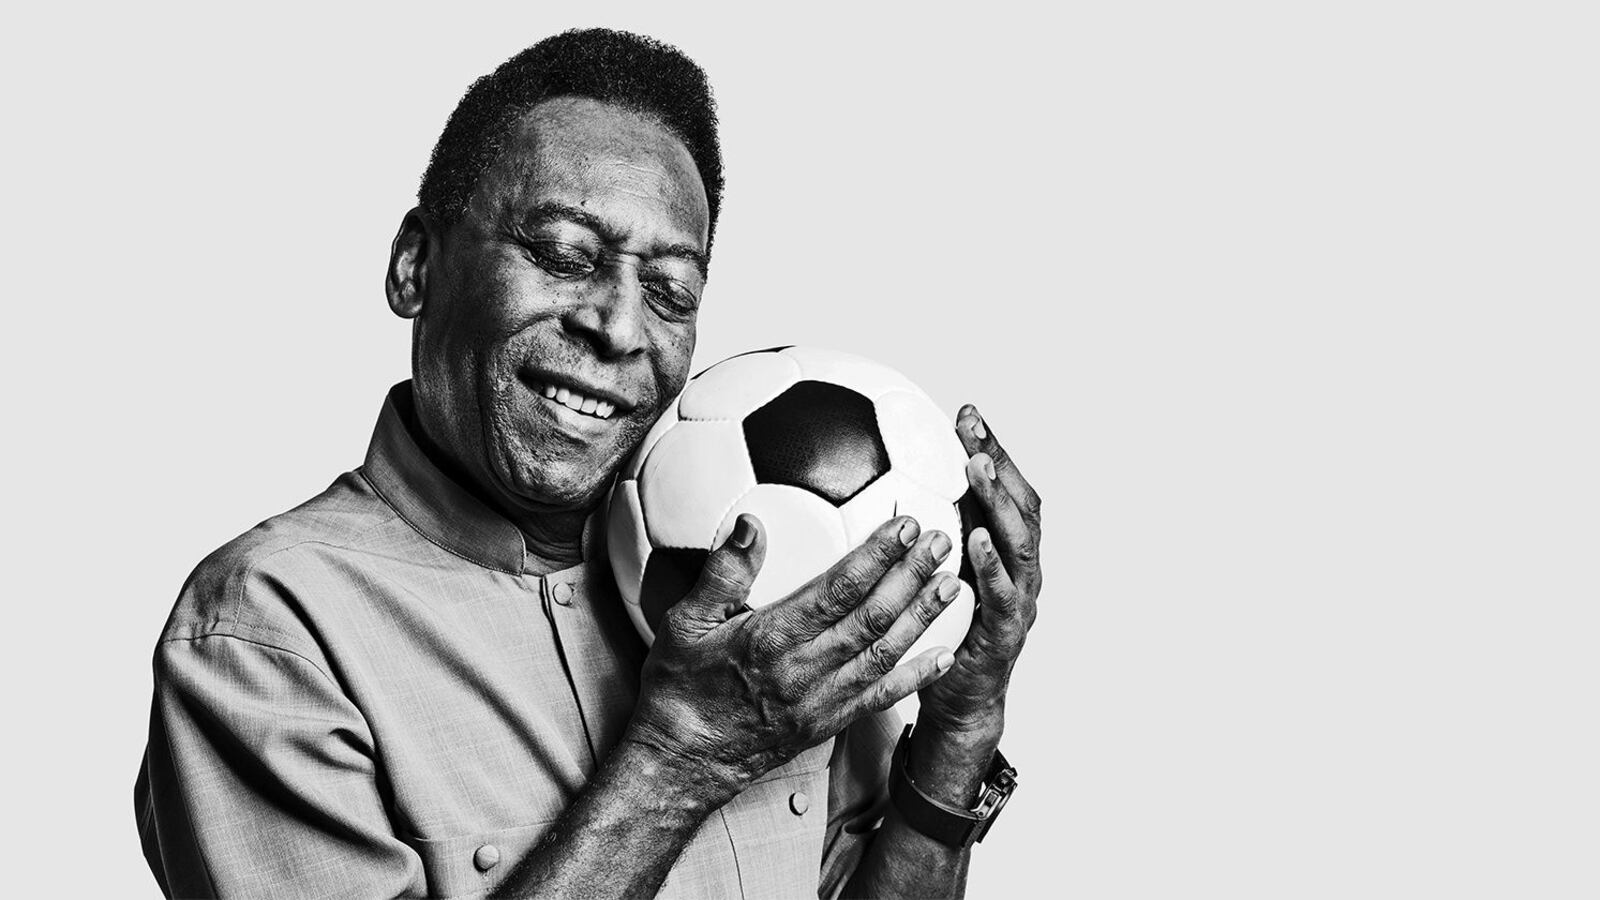 La vez que América se enfrentó a Pelé en un partido amistoso